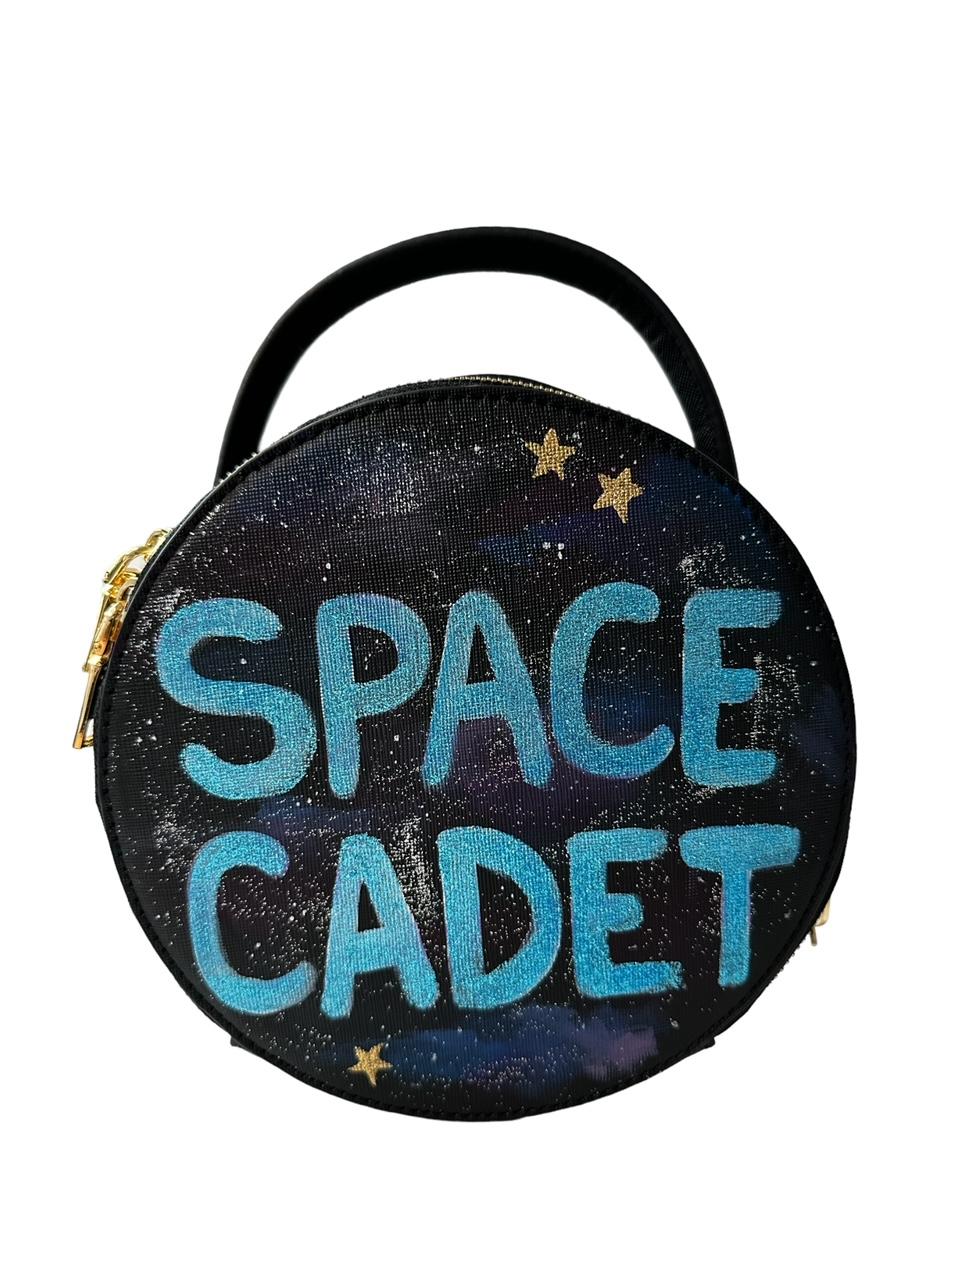 Space Cadet Bag